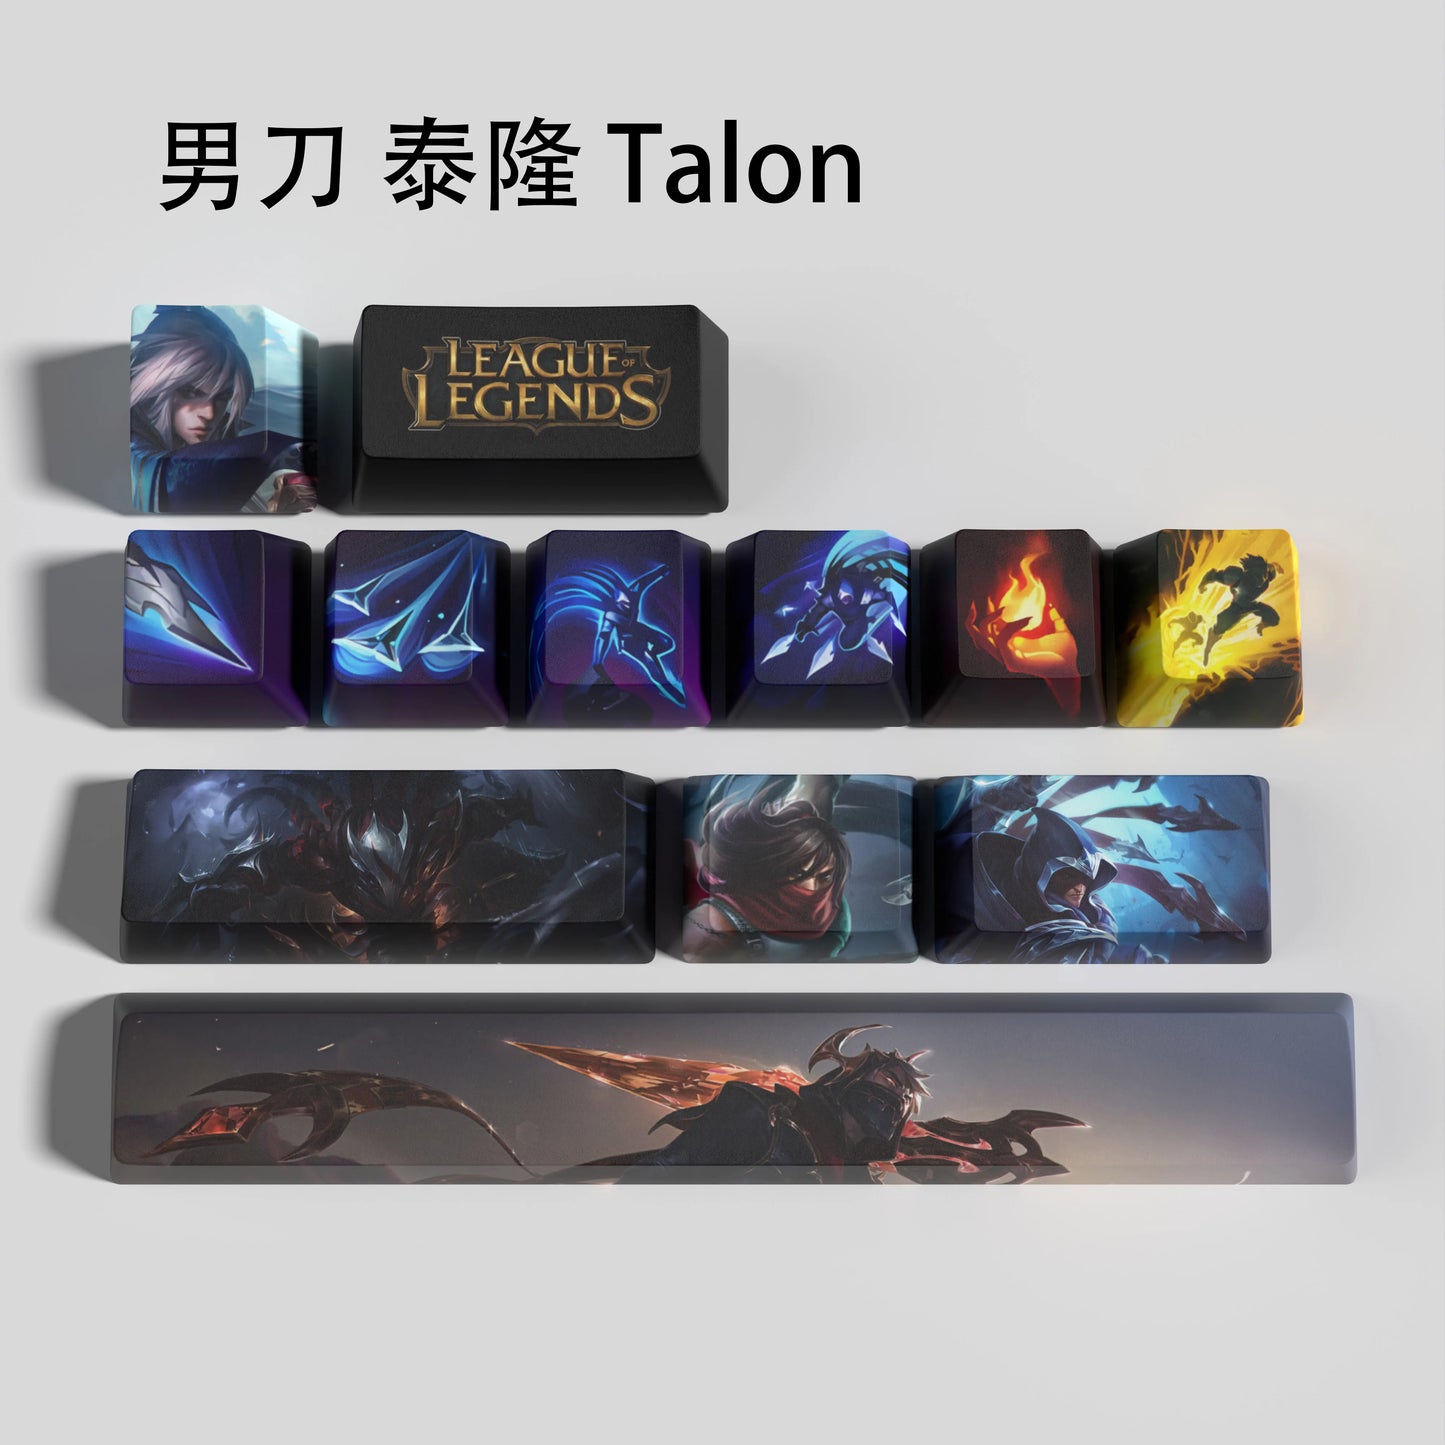 Talon keycaps